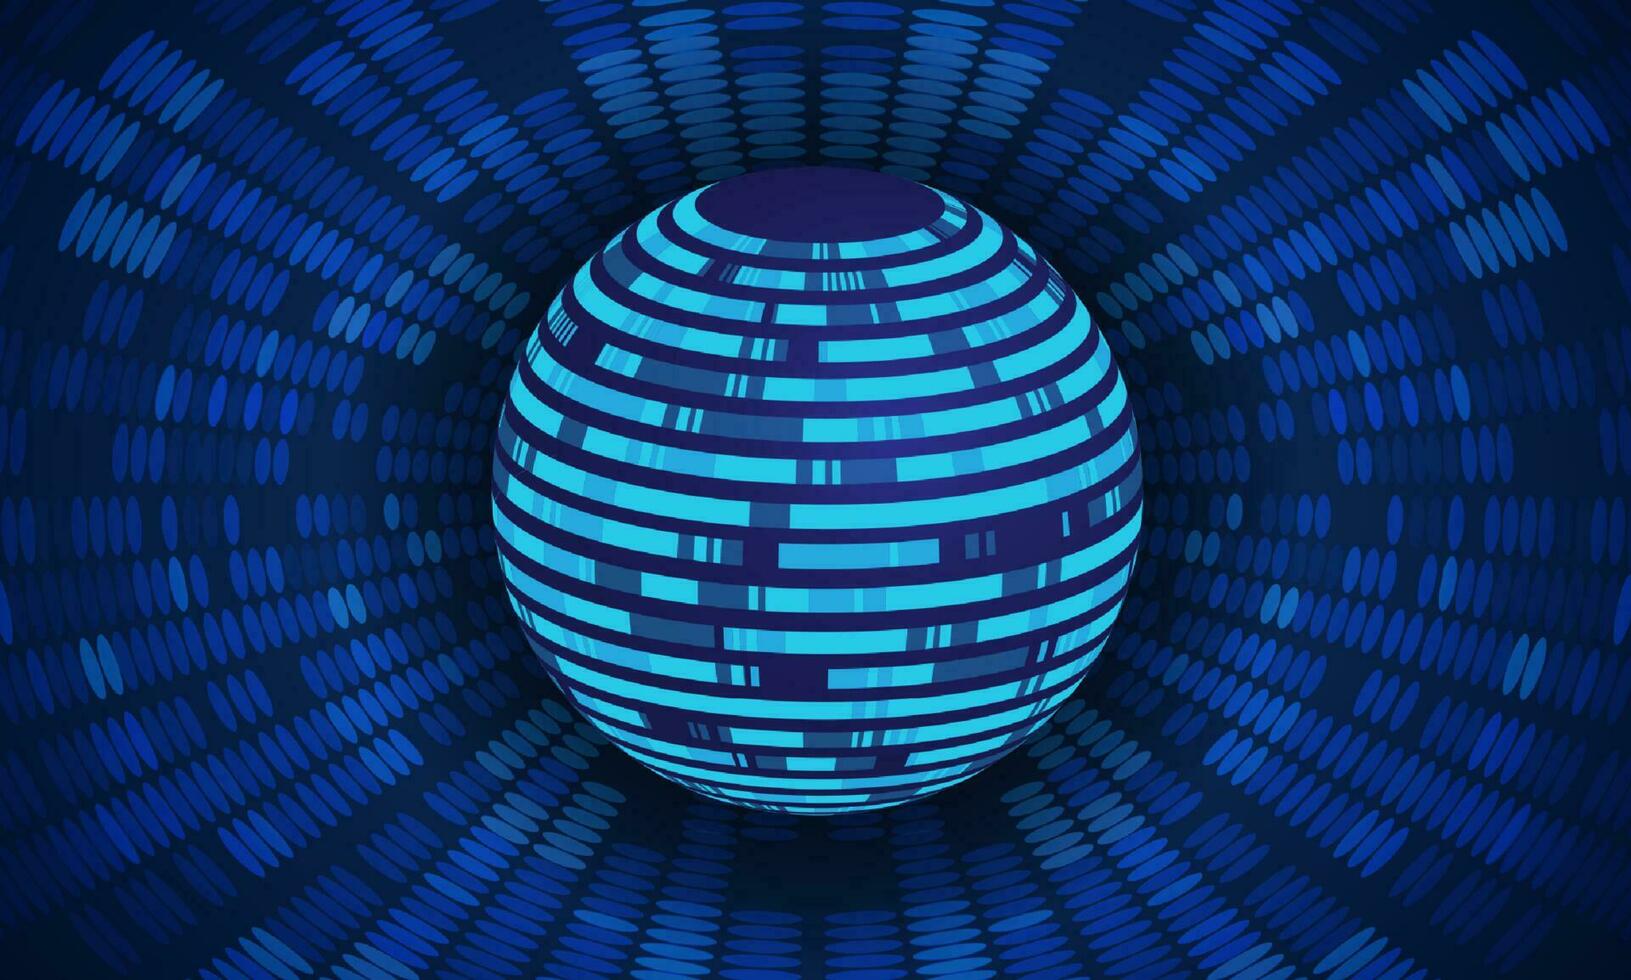 modern Cybersäkerhet teknologi bakgrund med blå klot vektor